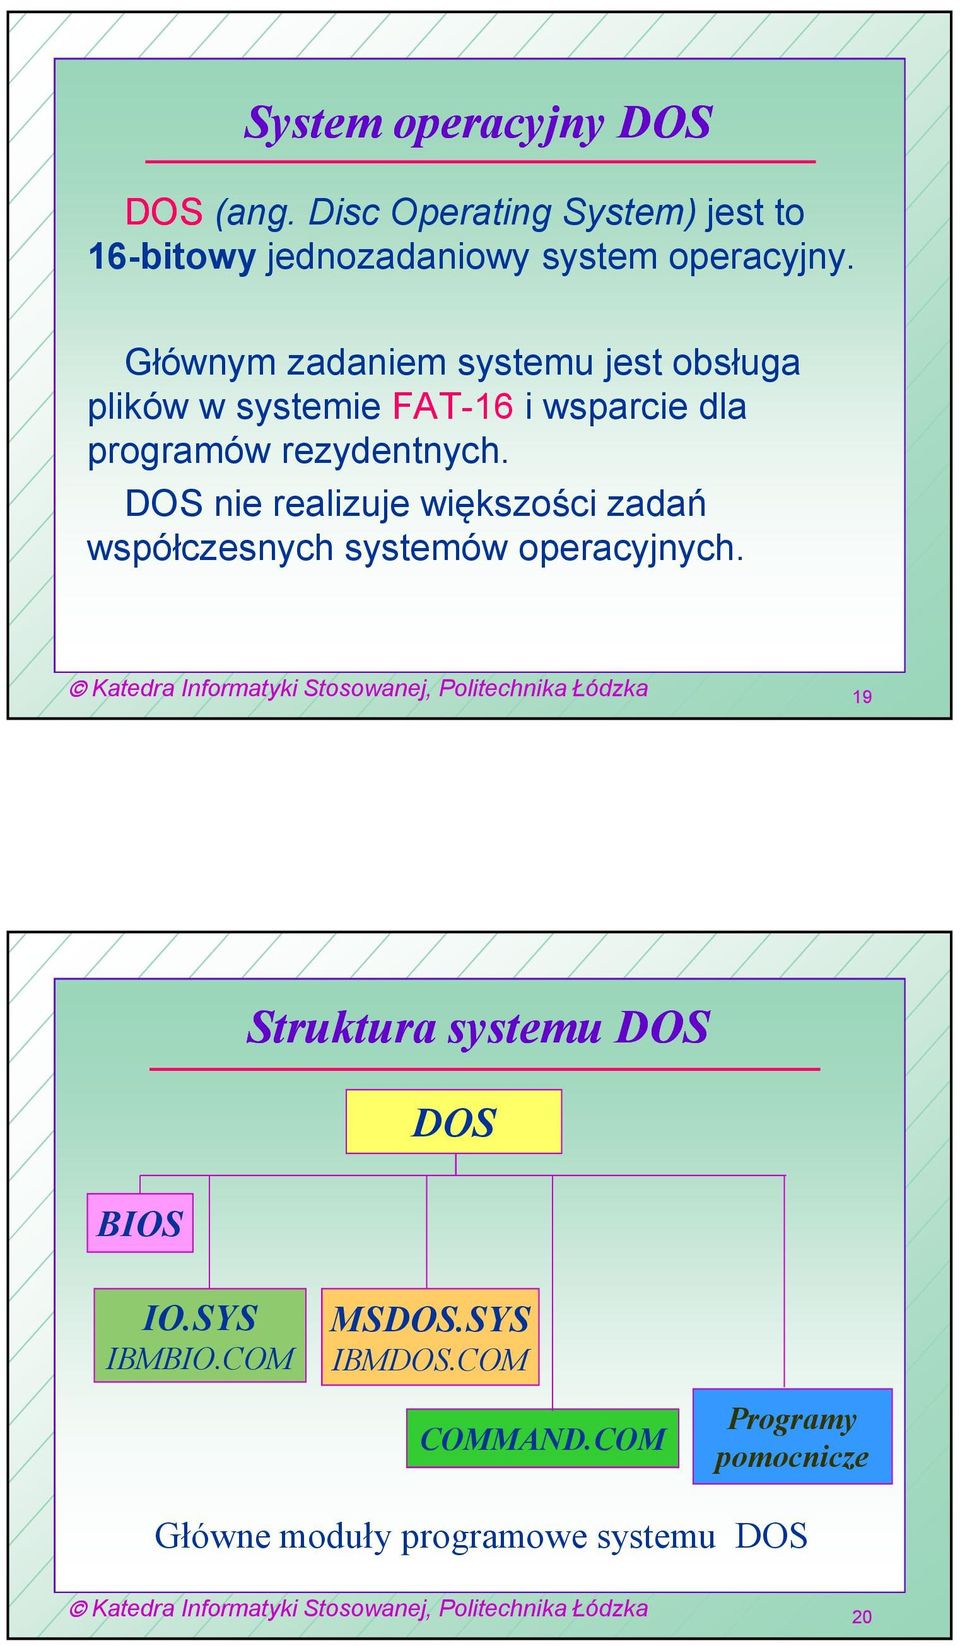 DOS nie realizuje większości zadań współczesnych systemów operacyjnych.